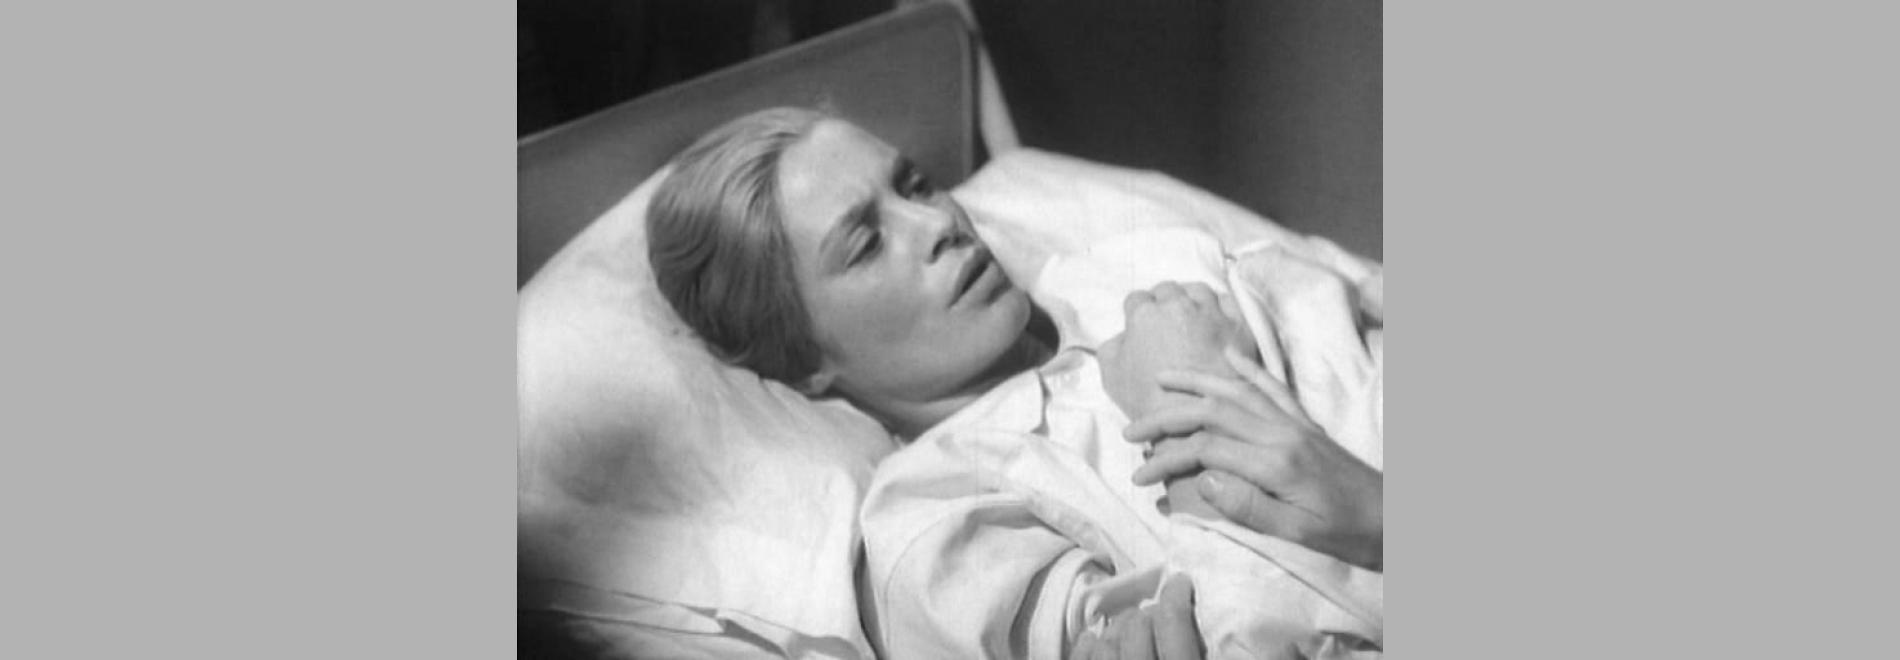 Nära livet / Al llindar de la vida (Ingmar Bergman, 1958)